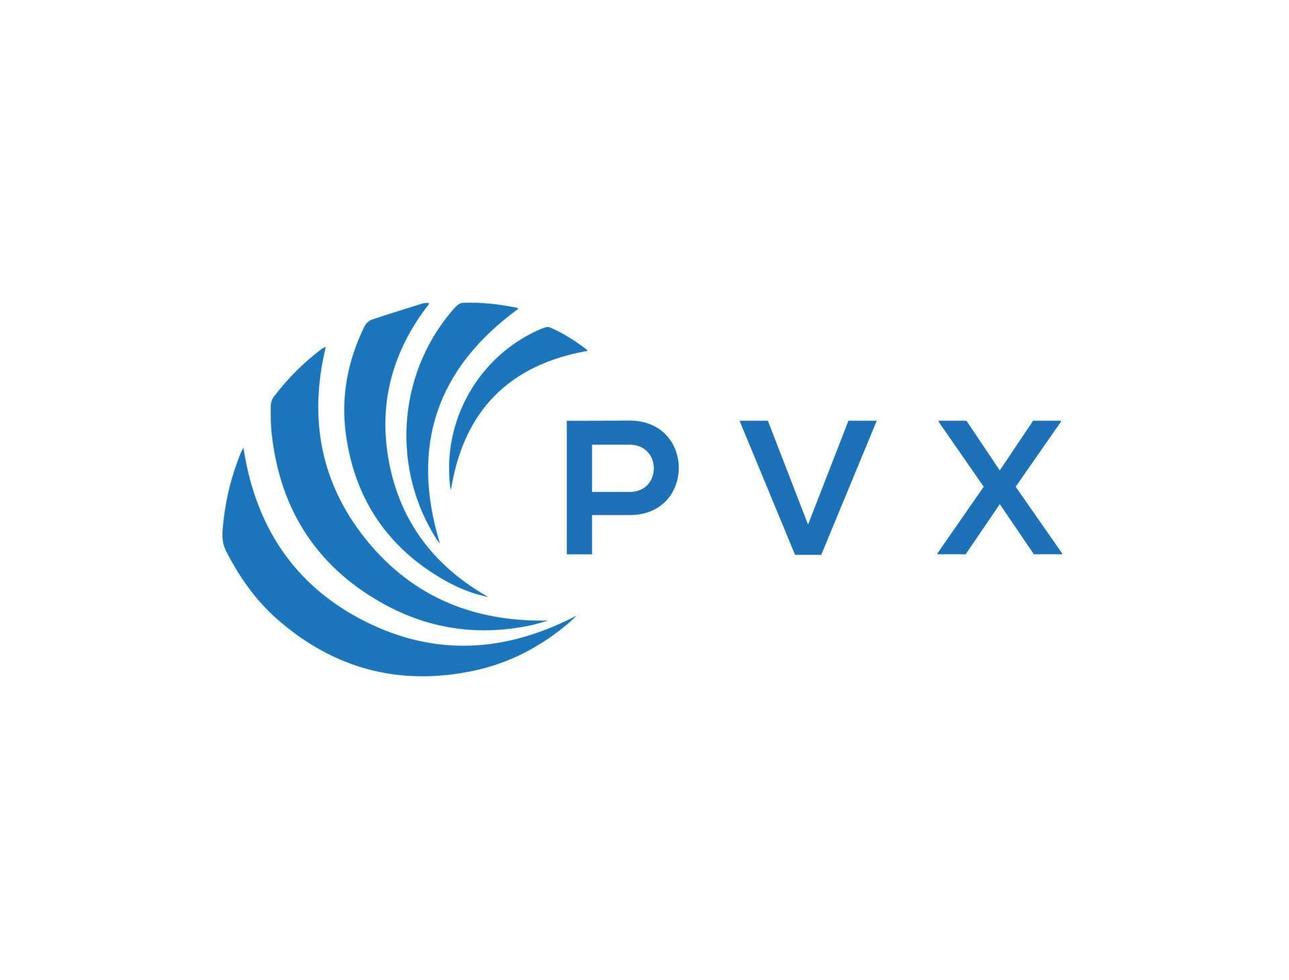 PVX letter logo design on white background. PVX creative circle letter logo concept. PVX letter design. vector